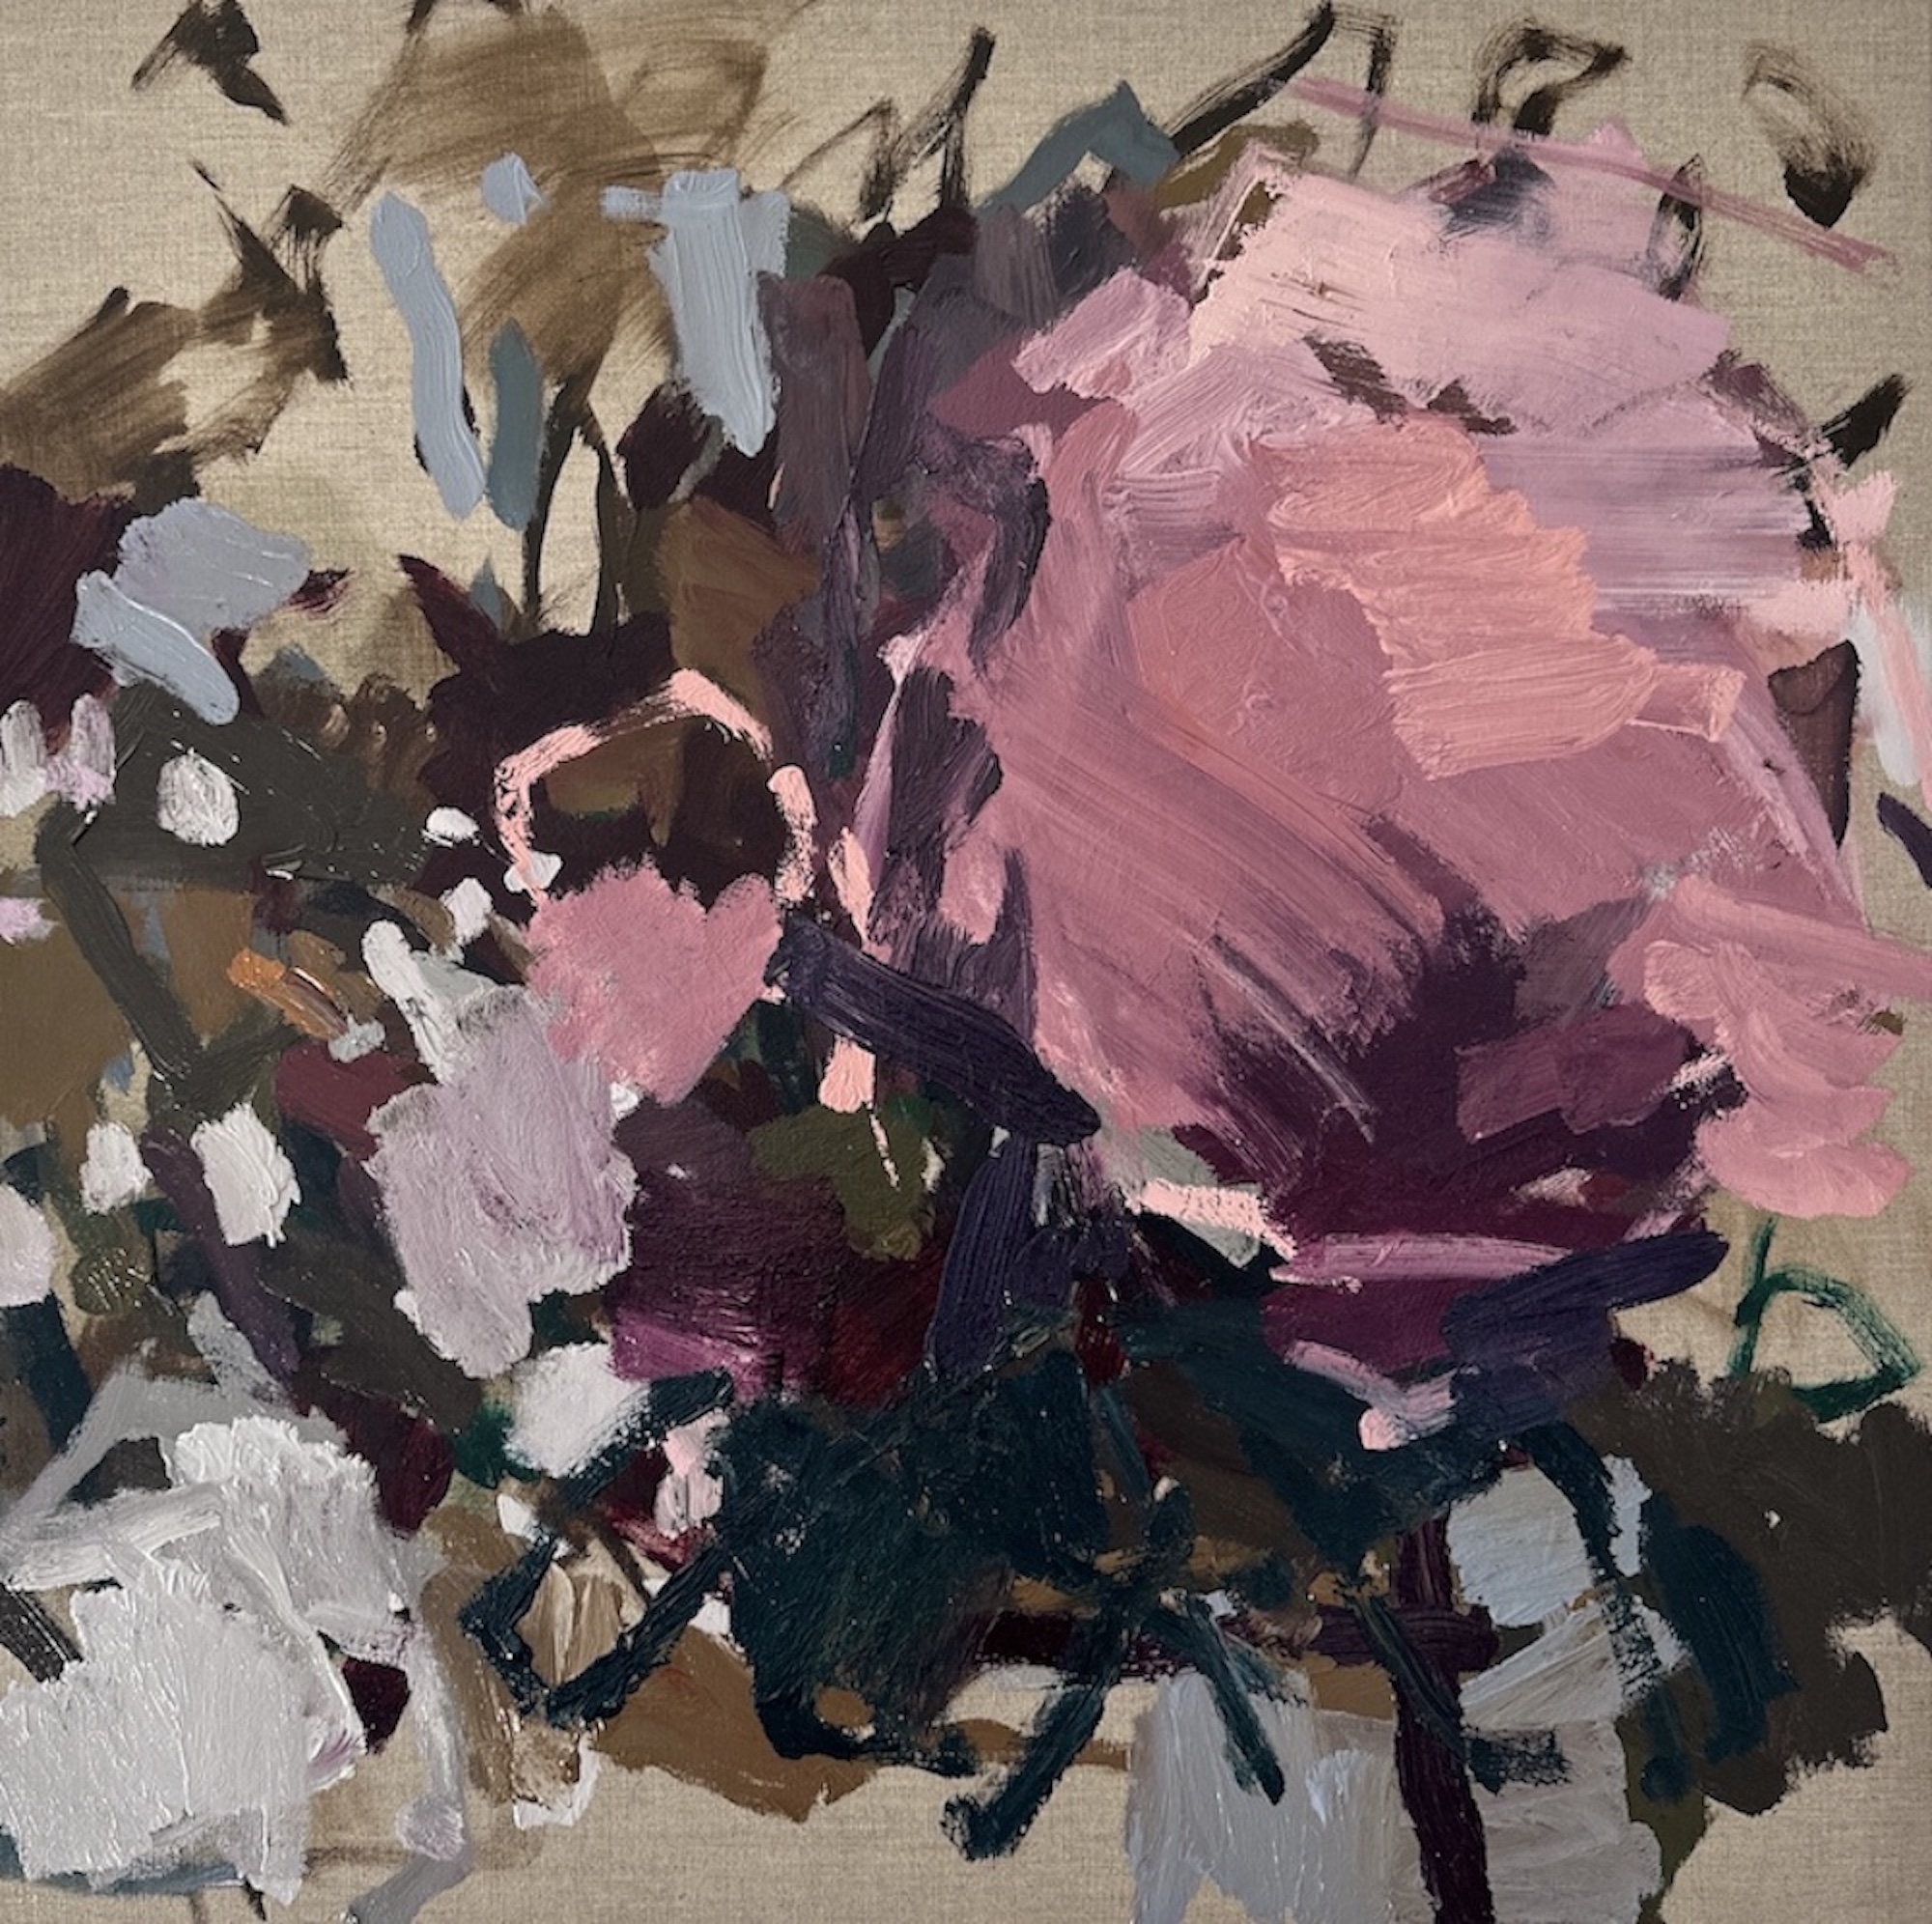 Llewellyn Skye 'In Full Bloom' 76 x 46cm oil on linen $4,000